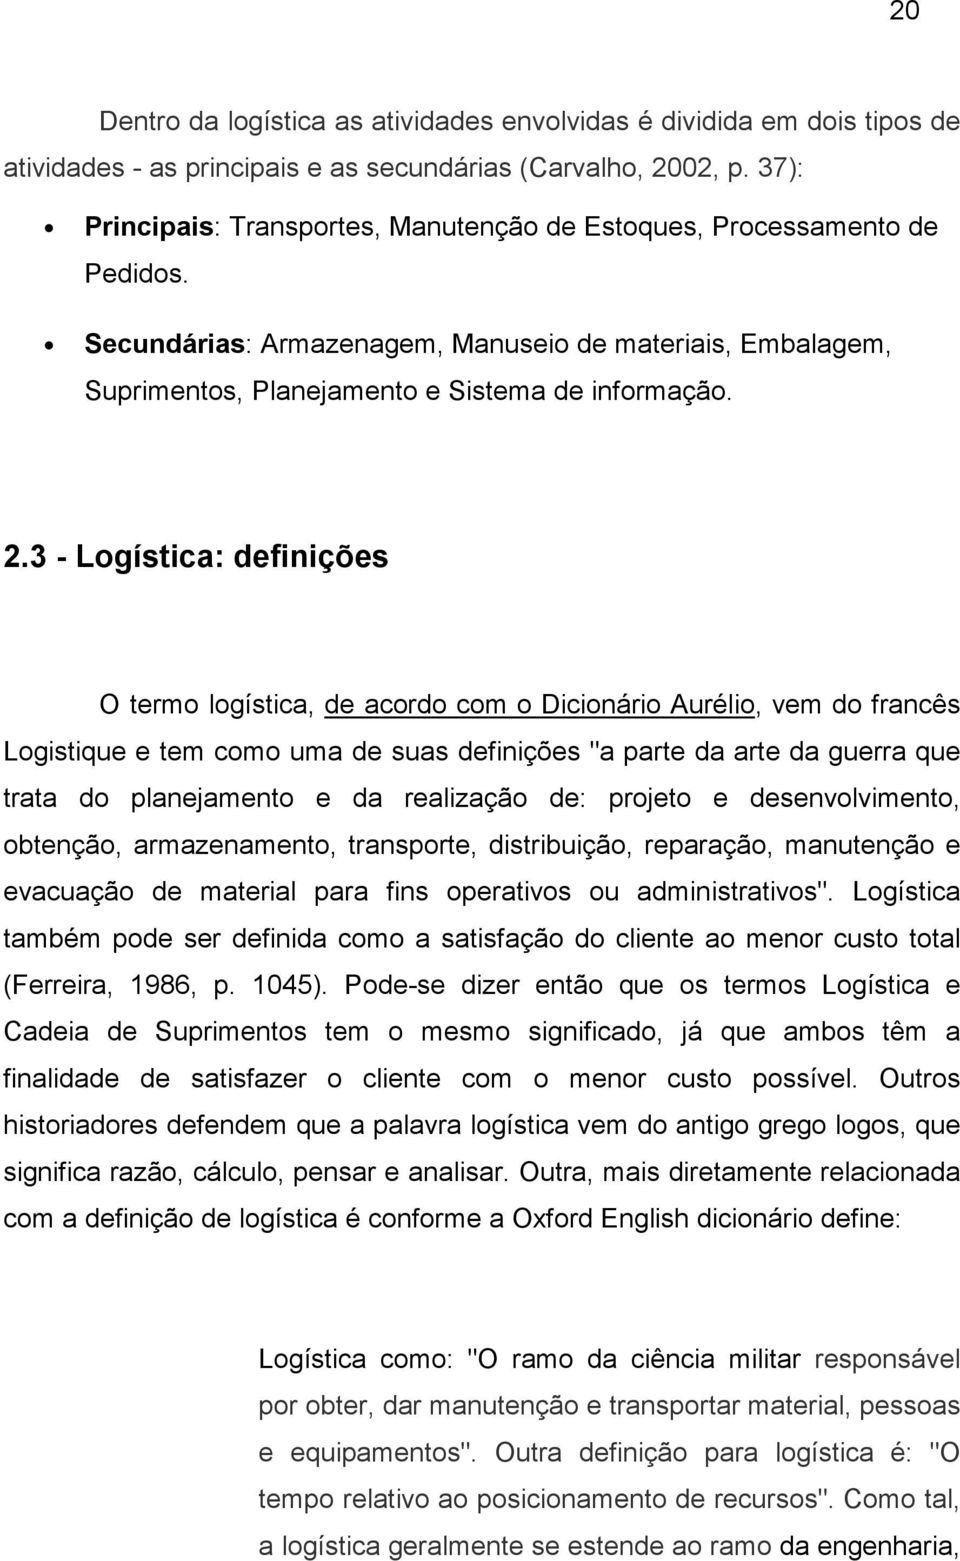 3 - Logística: definições O termo logística, de acordo com o Dicionário Aurélio, vem do francês Logistique e tem como uma de suas definições "a parte da arte da guerra que trata do planejamento e da